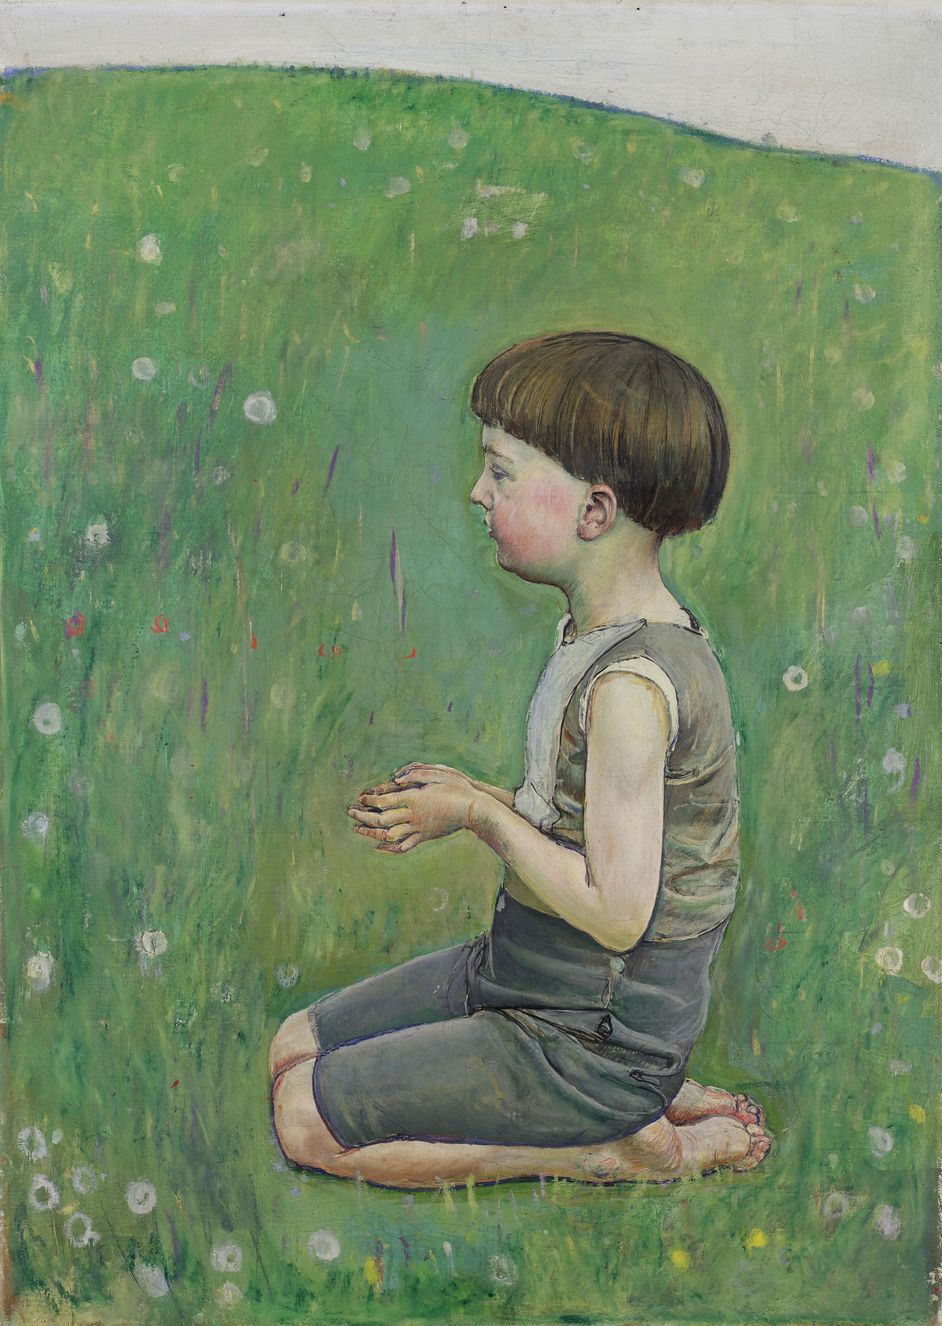 Oil on canvas, 62 × 44.5 cm, Kunsthaus Zürich